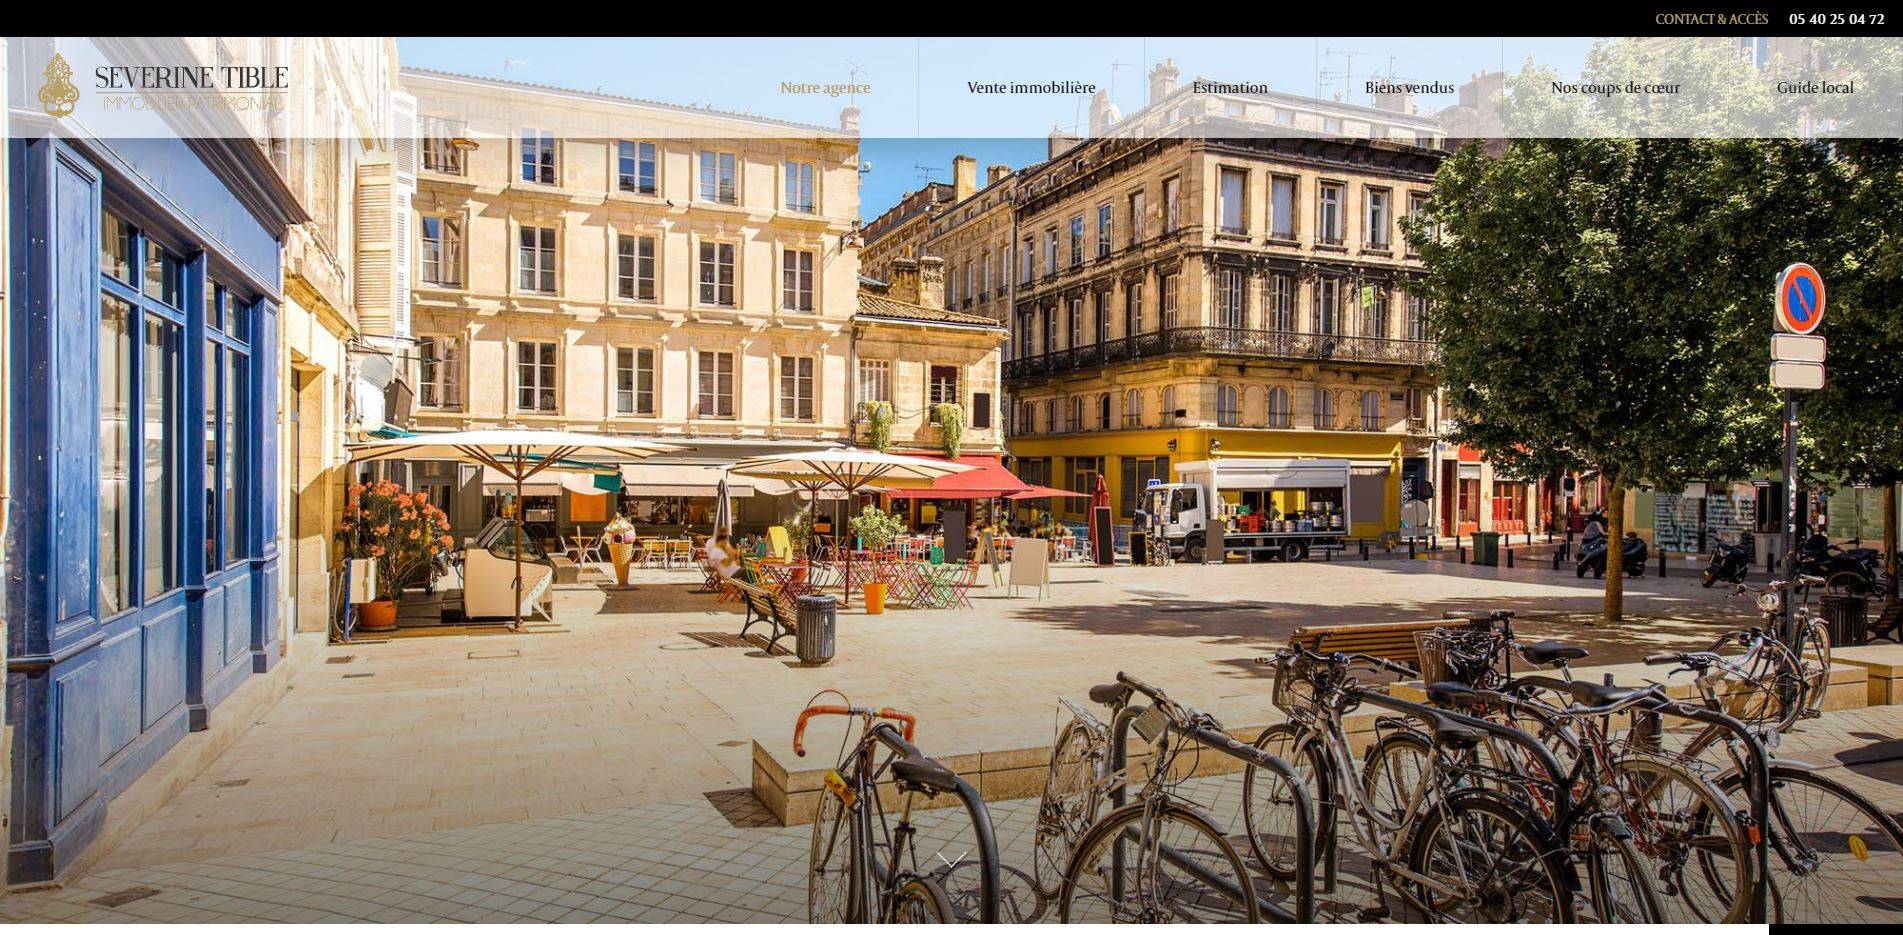 Quelle agence immobilière pour acheter un appartement de prestige à Bordeaux ? - Séverine Tible Immobilier Patrimonial